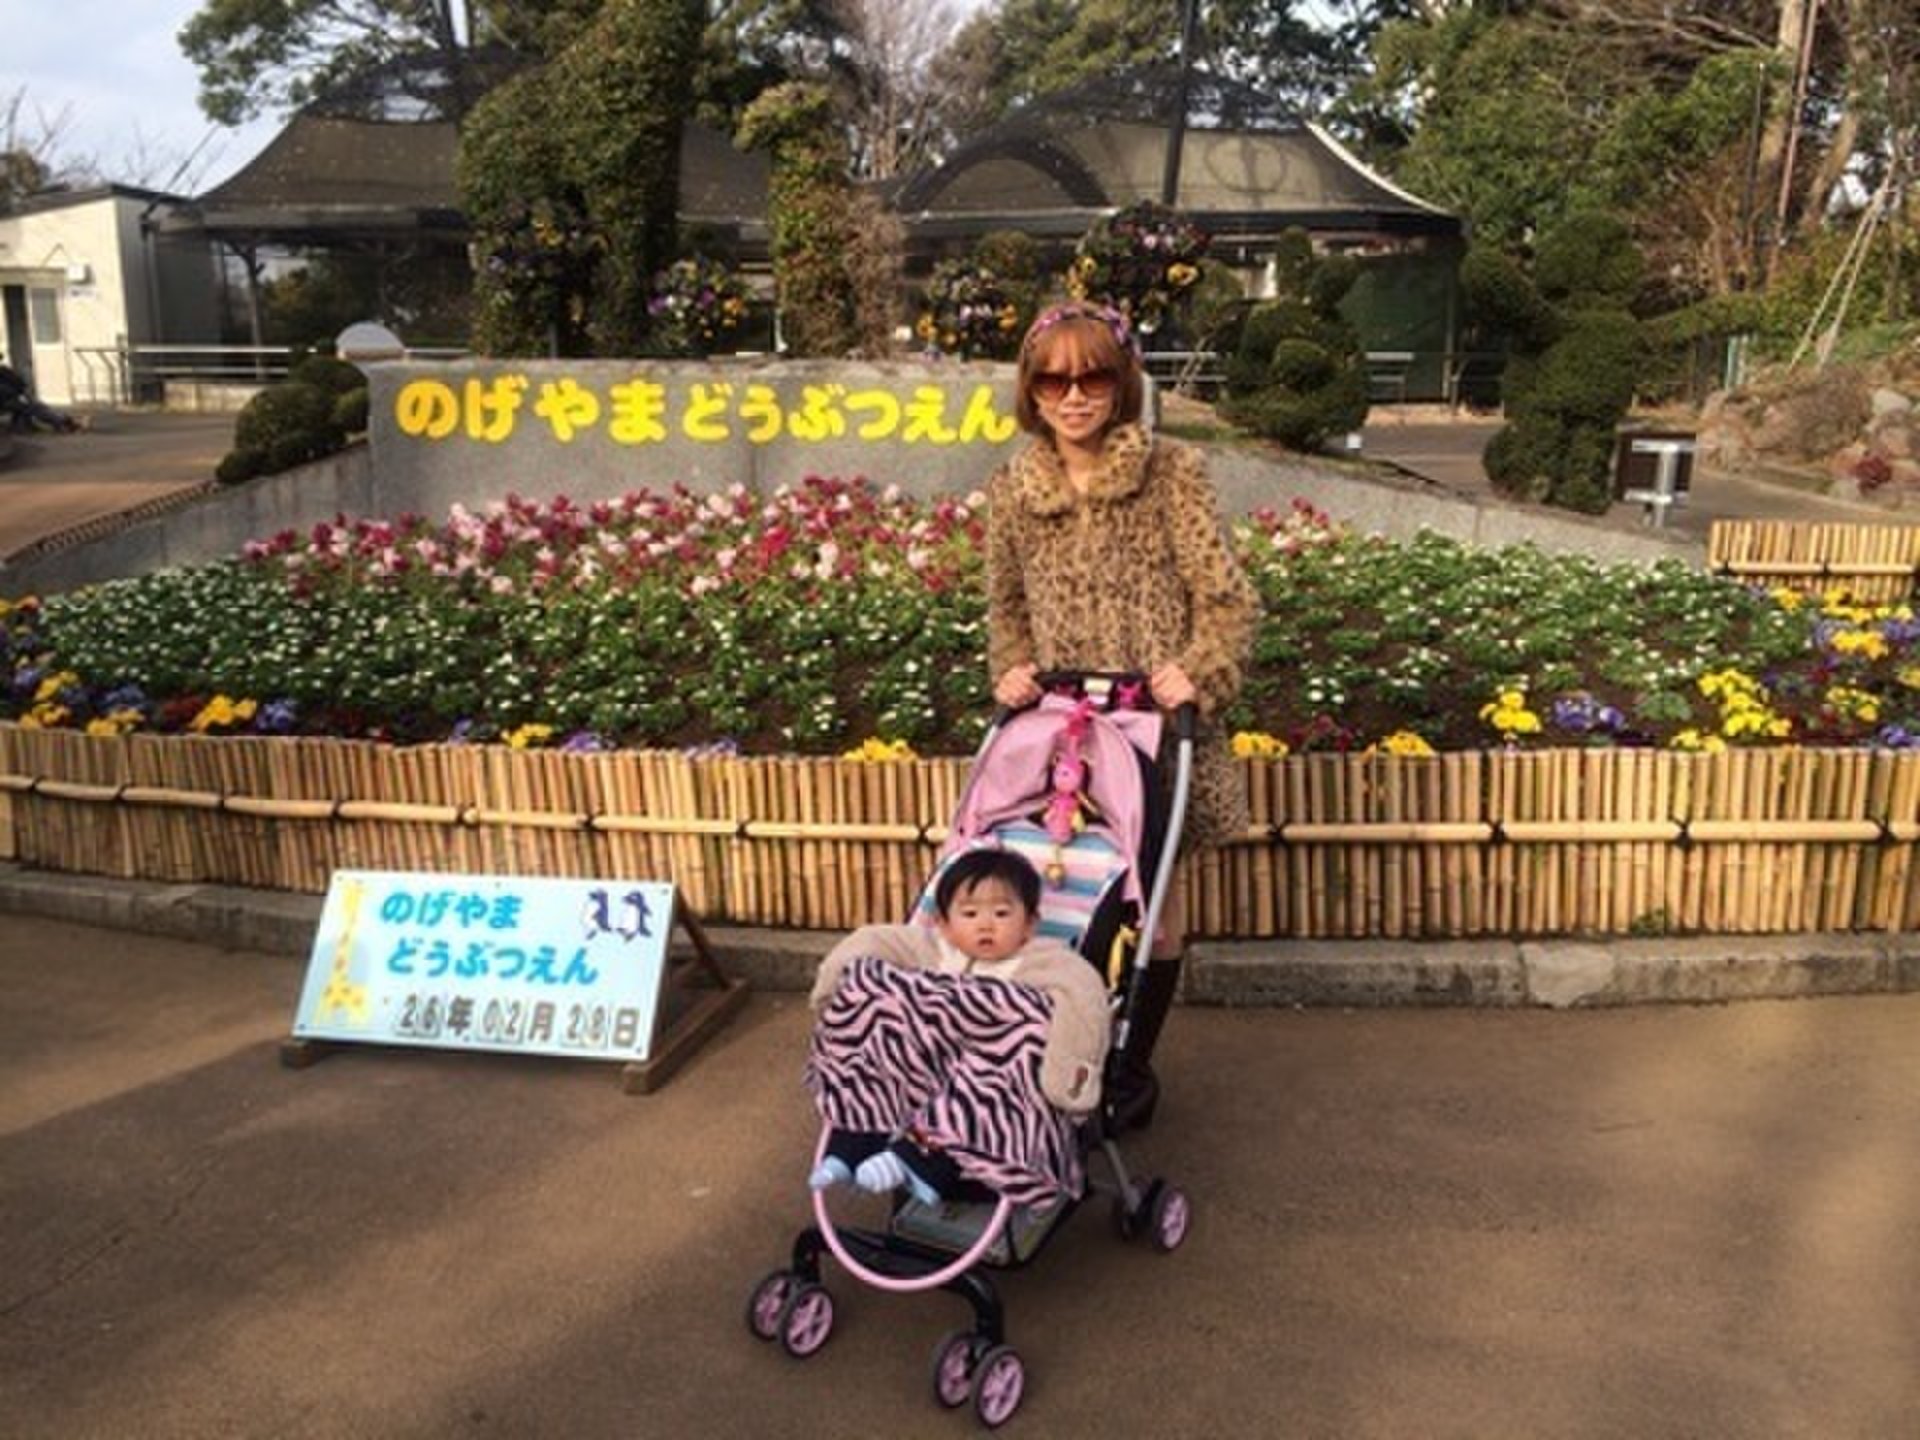 横浜の下町「野毛」で子供と大はしゃぎ☆1日無料で遊ぶママおでかけプラン☆